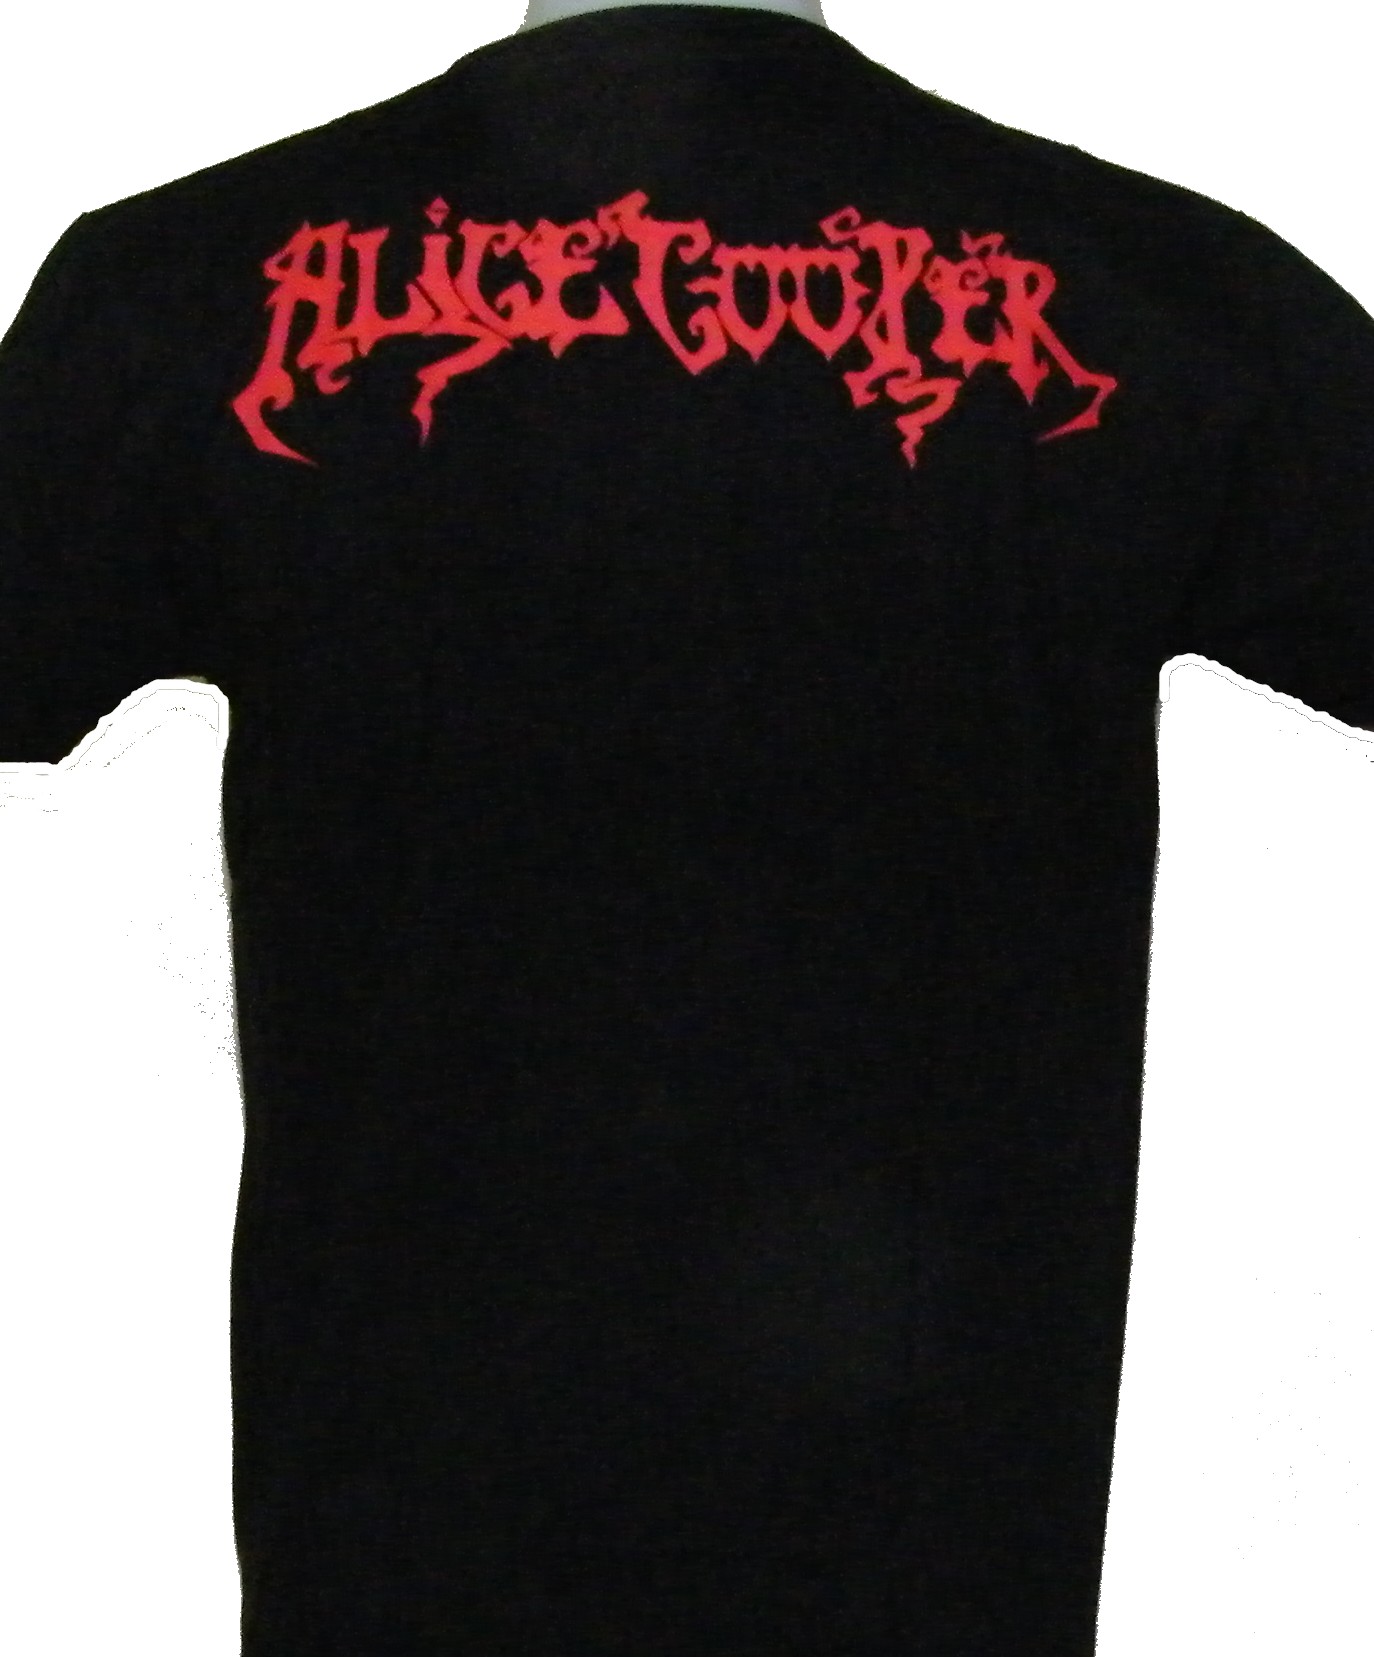 Alice Cooper t-shirt size S – RoxxBKK